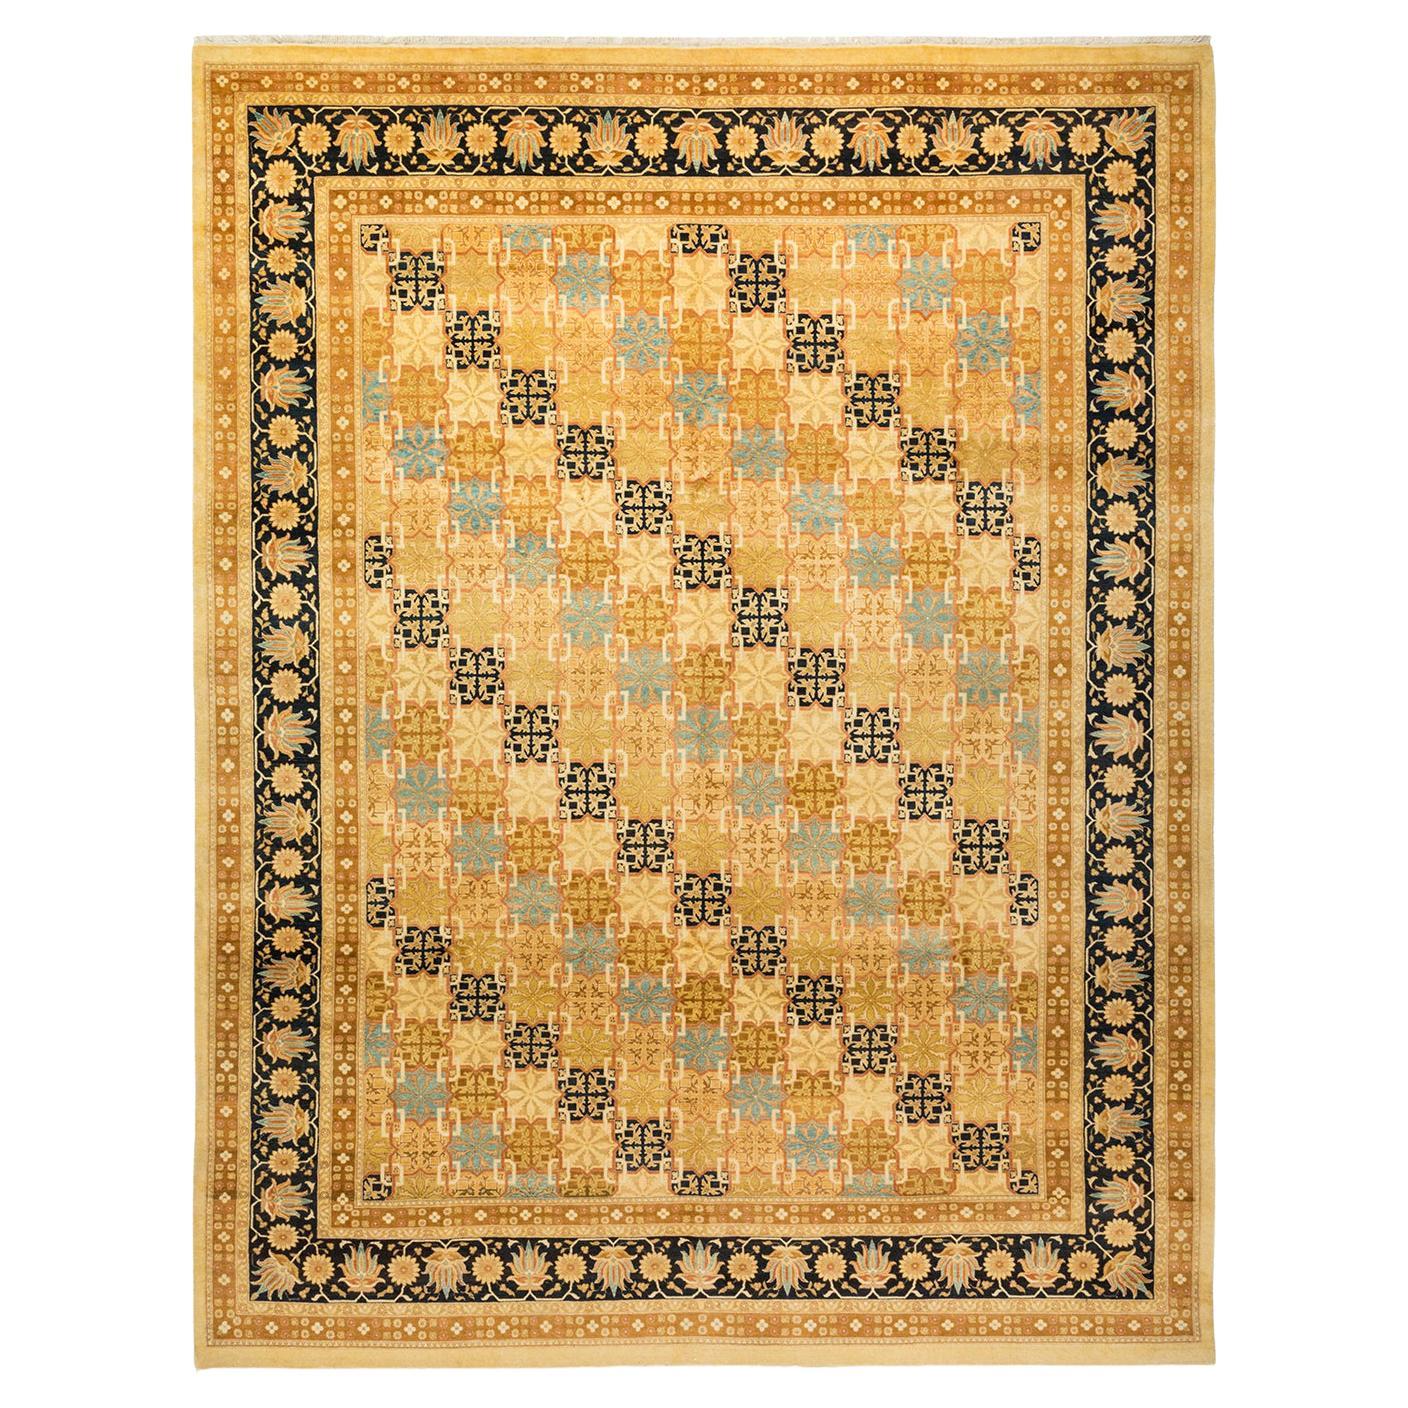 Traditioneller handgefertigter elfenbeinfarbener Mogul-Teppich, Unikat